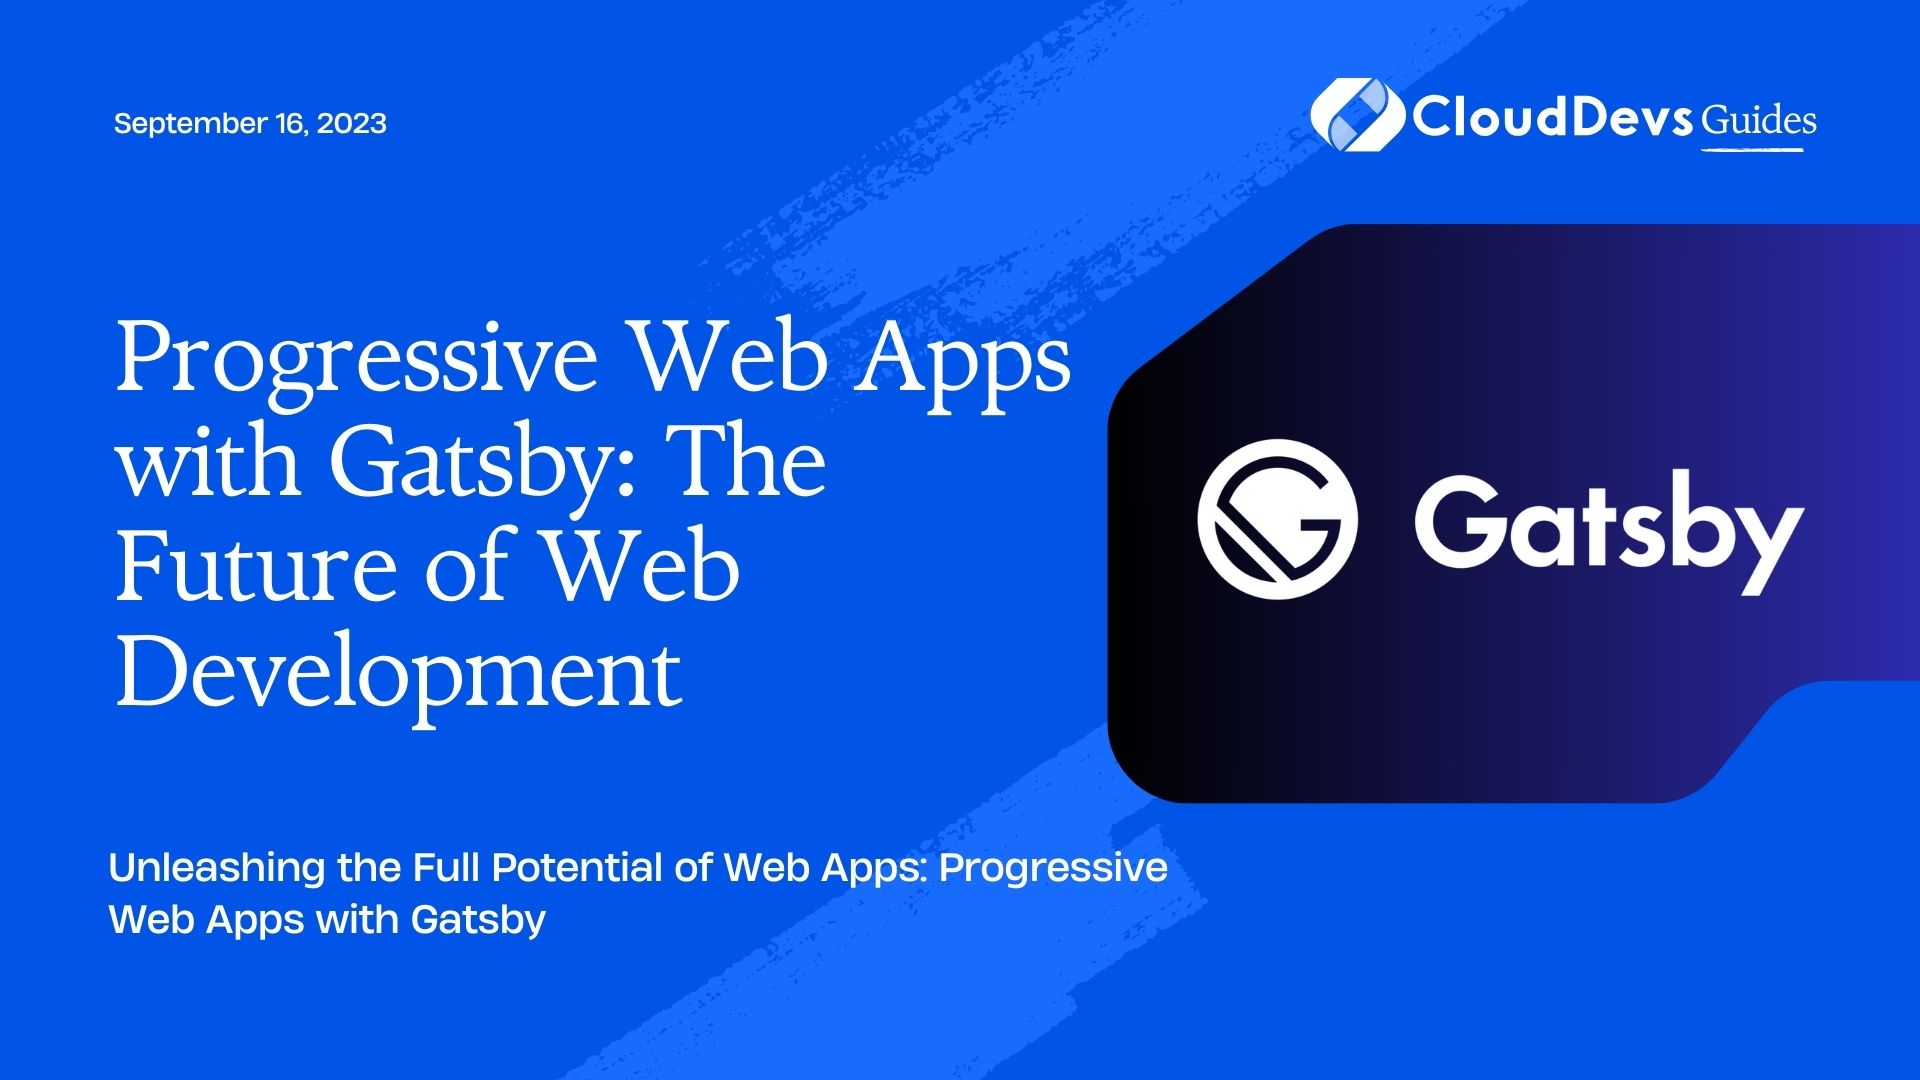 Progressive Web Apps with Gatsby: The Future of Web Development